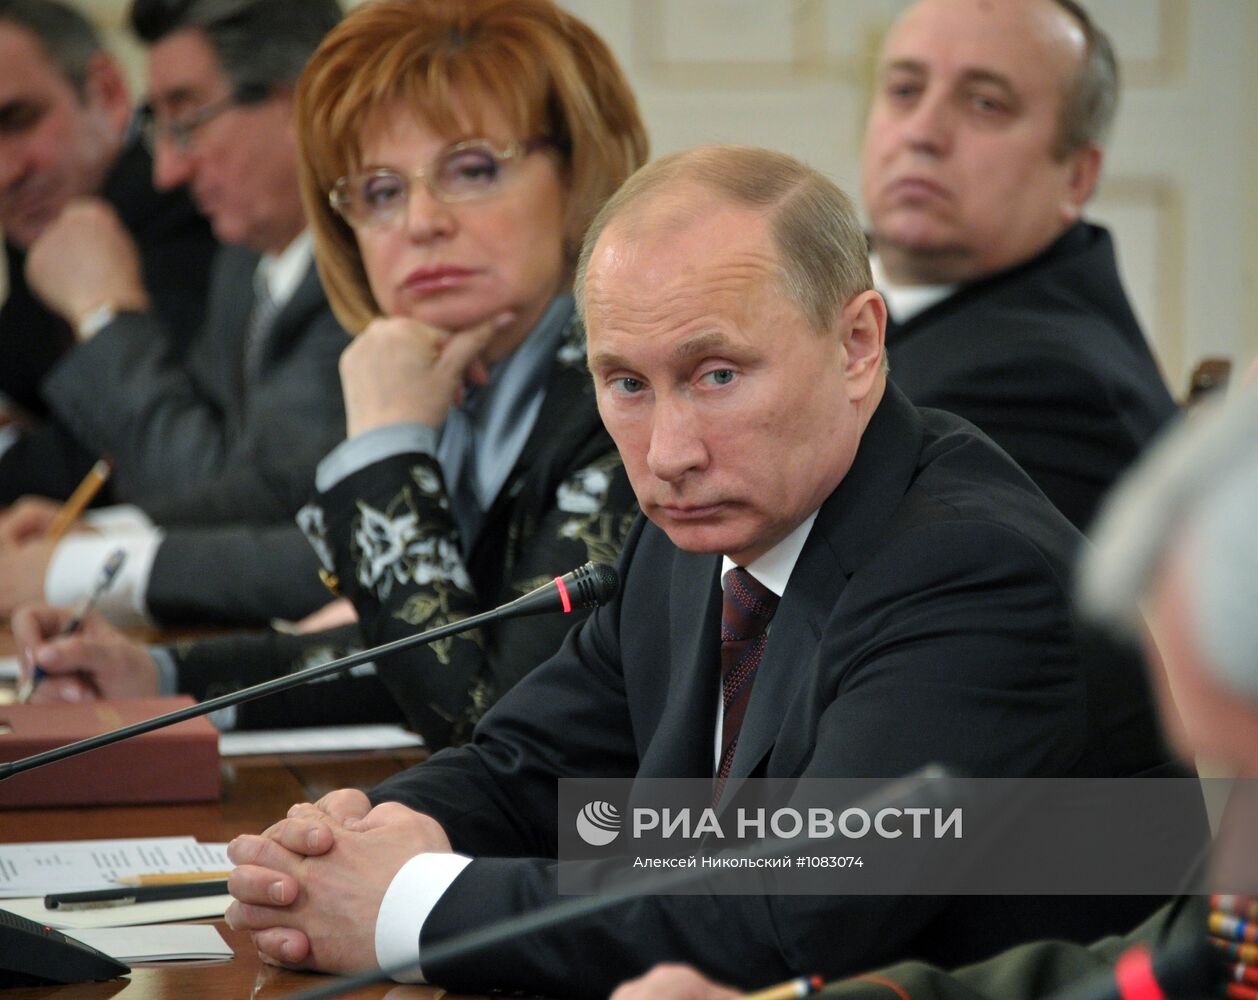 В.Путин встретился с членами координационного совета ОНФ